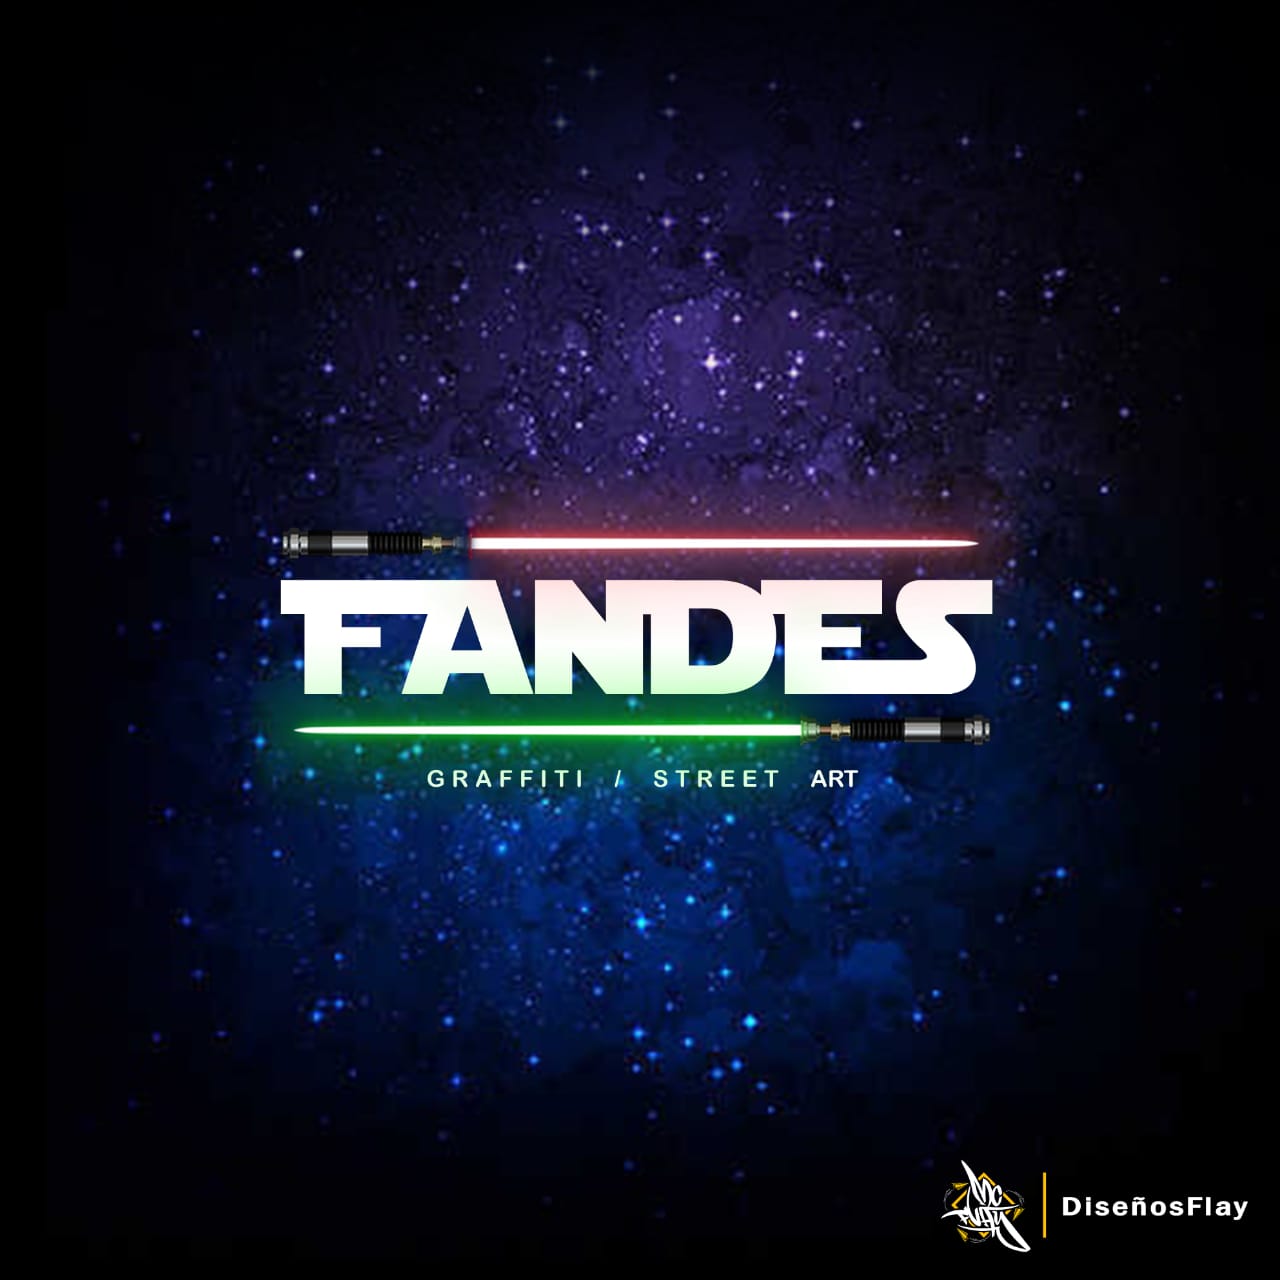 FANDES +56 9 9309 6646